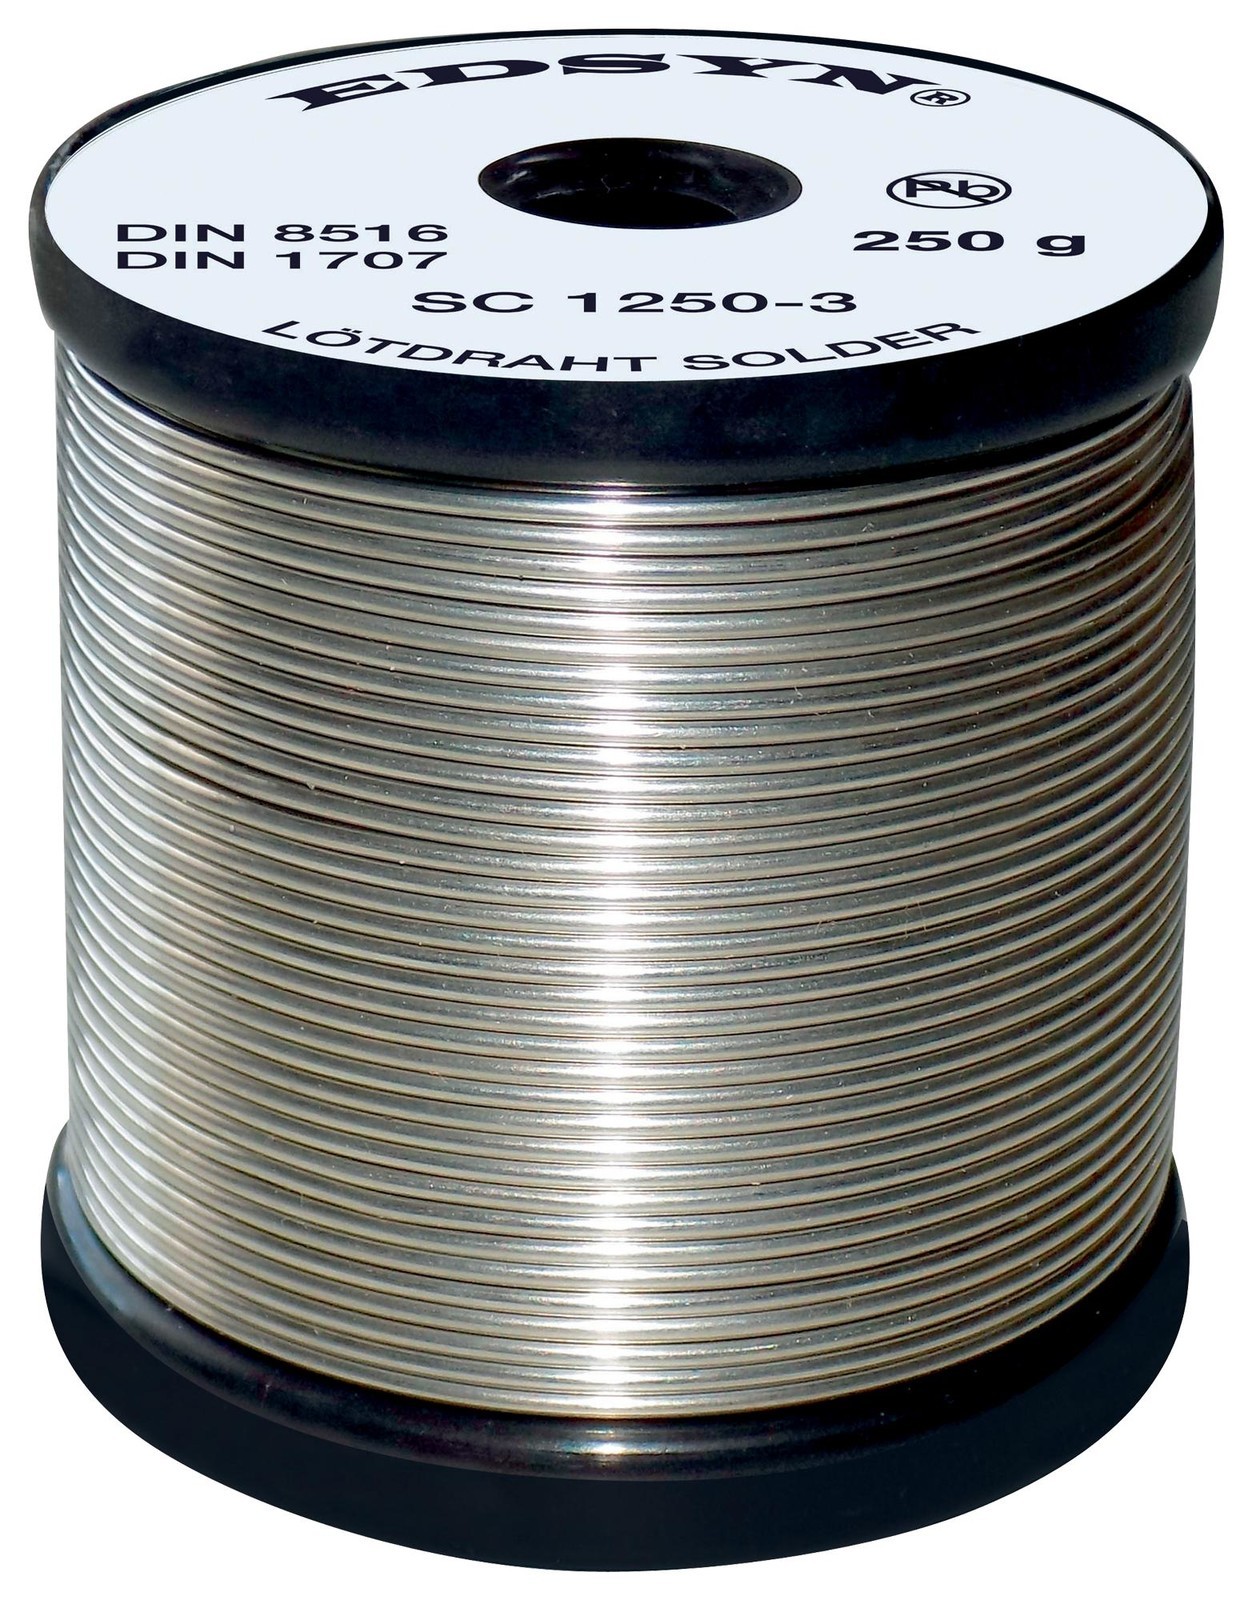 Edsyn Sc 8250-3 Solder Wire, Sn/cu, 0.8mm, 250G